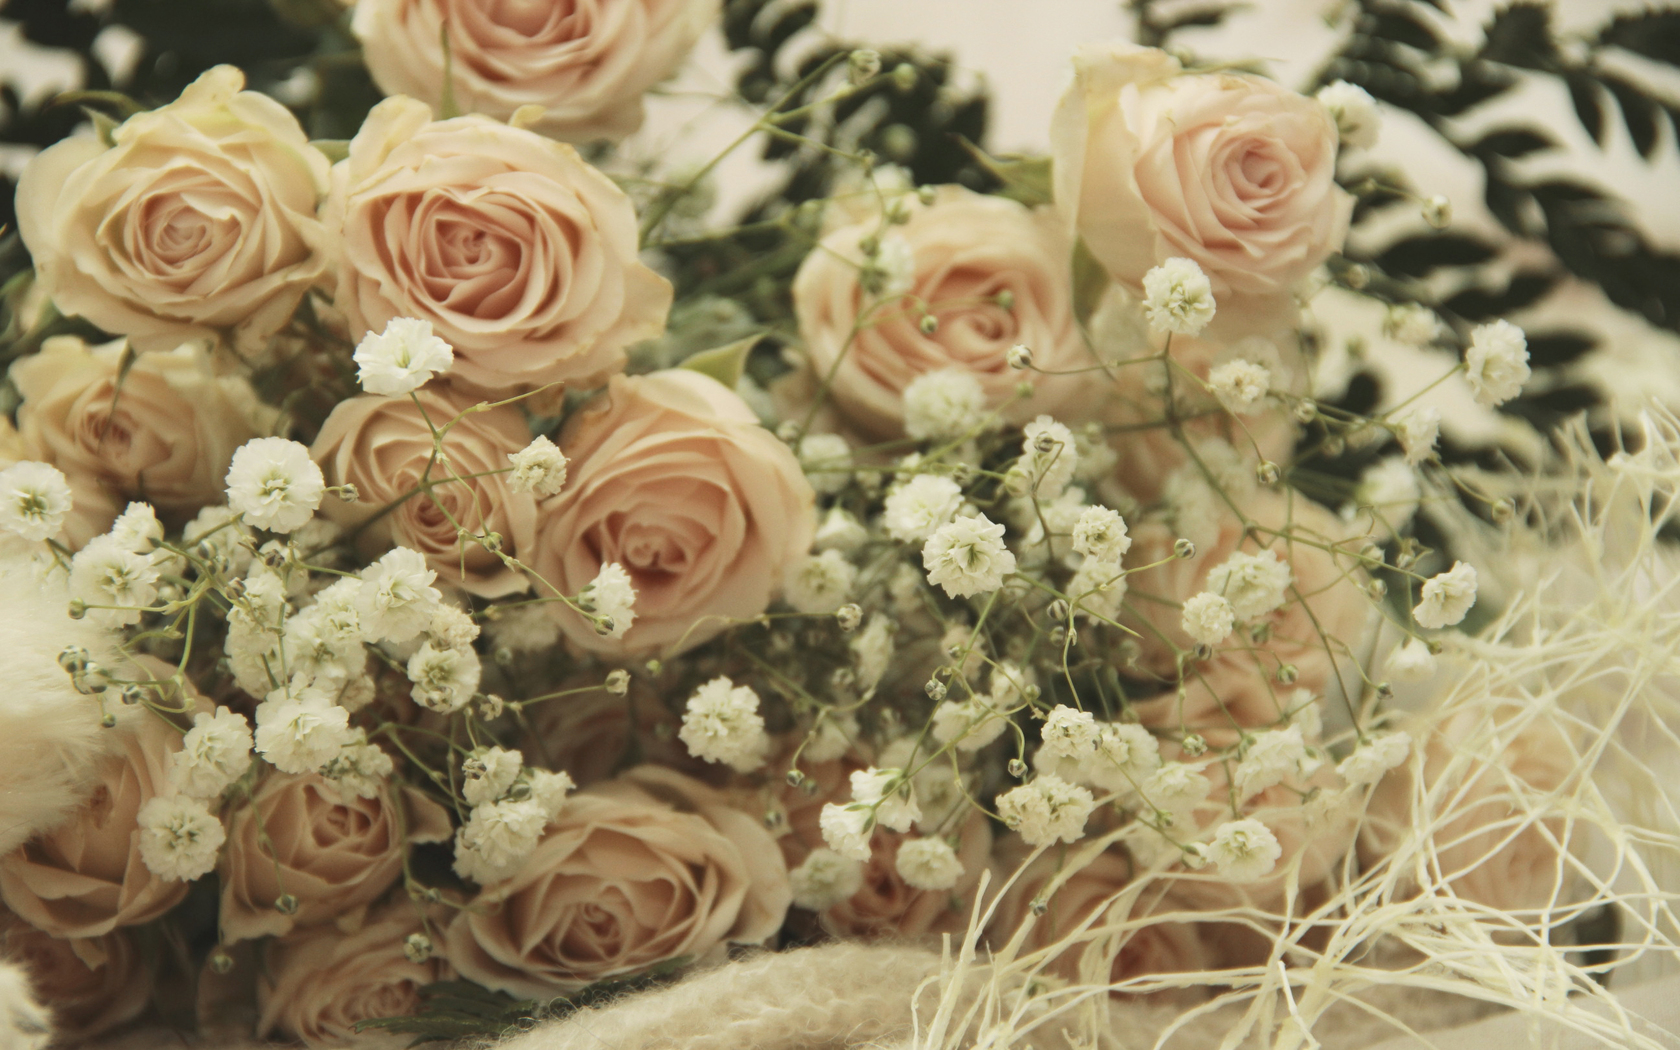  Цветы розы, романтика, нежность картинка, обои рабочий стол